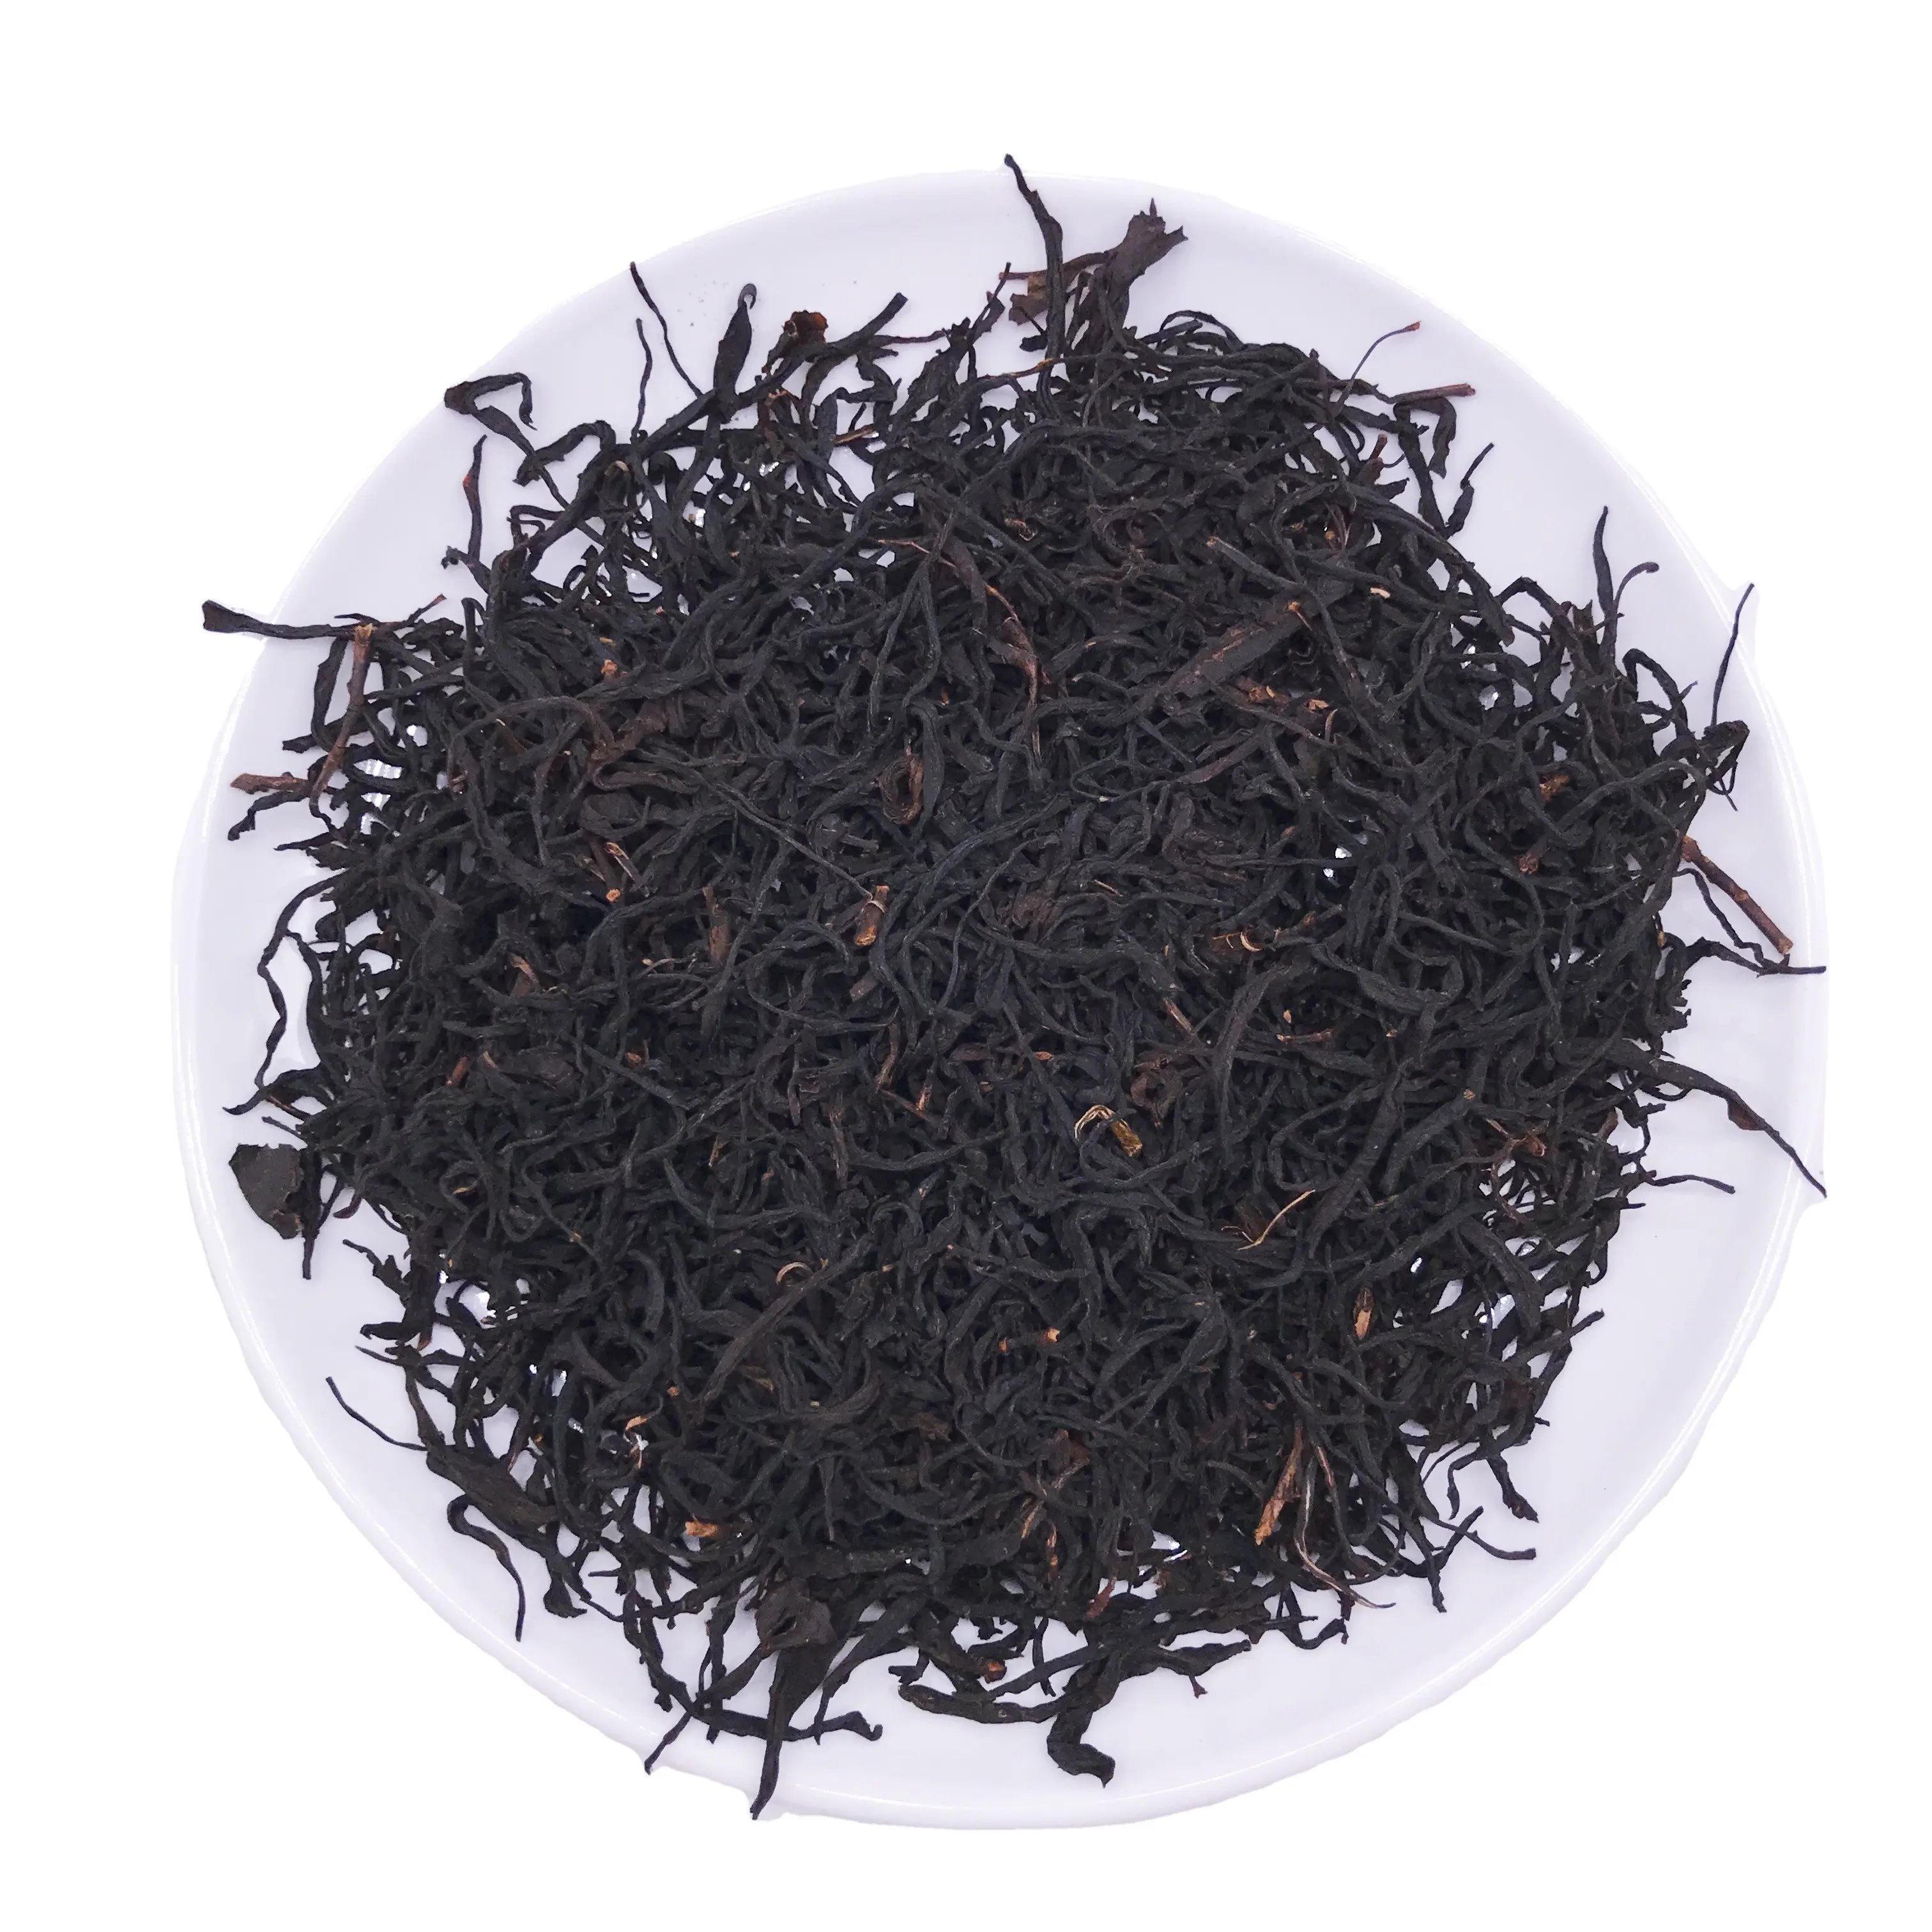 WY001, Новое поступление, евро, Юньнань, черный чай, китайский, высокое качество, рассыпные листья, с высоким ароматом, черный чай